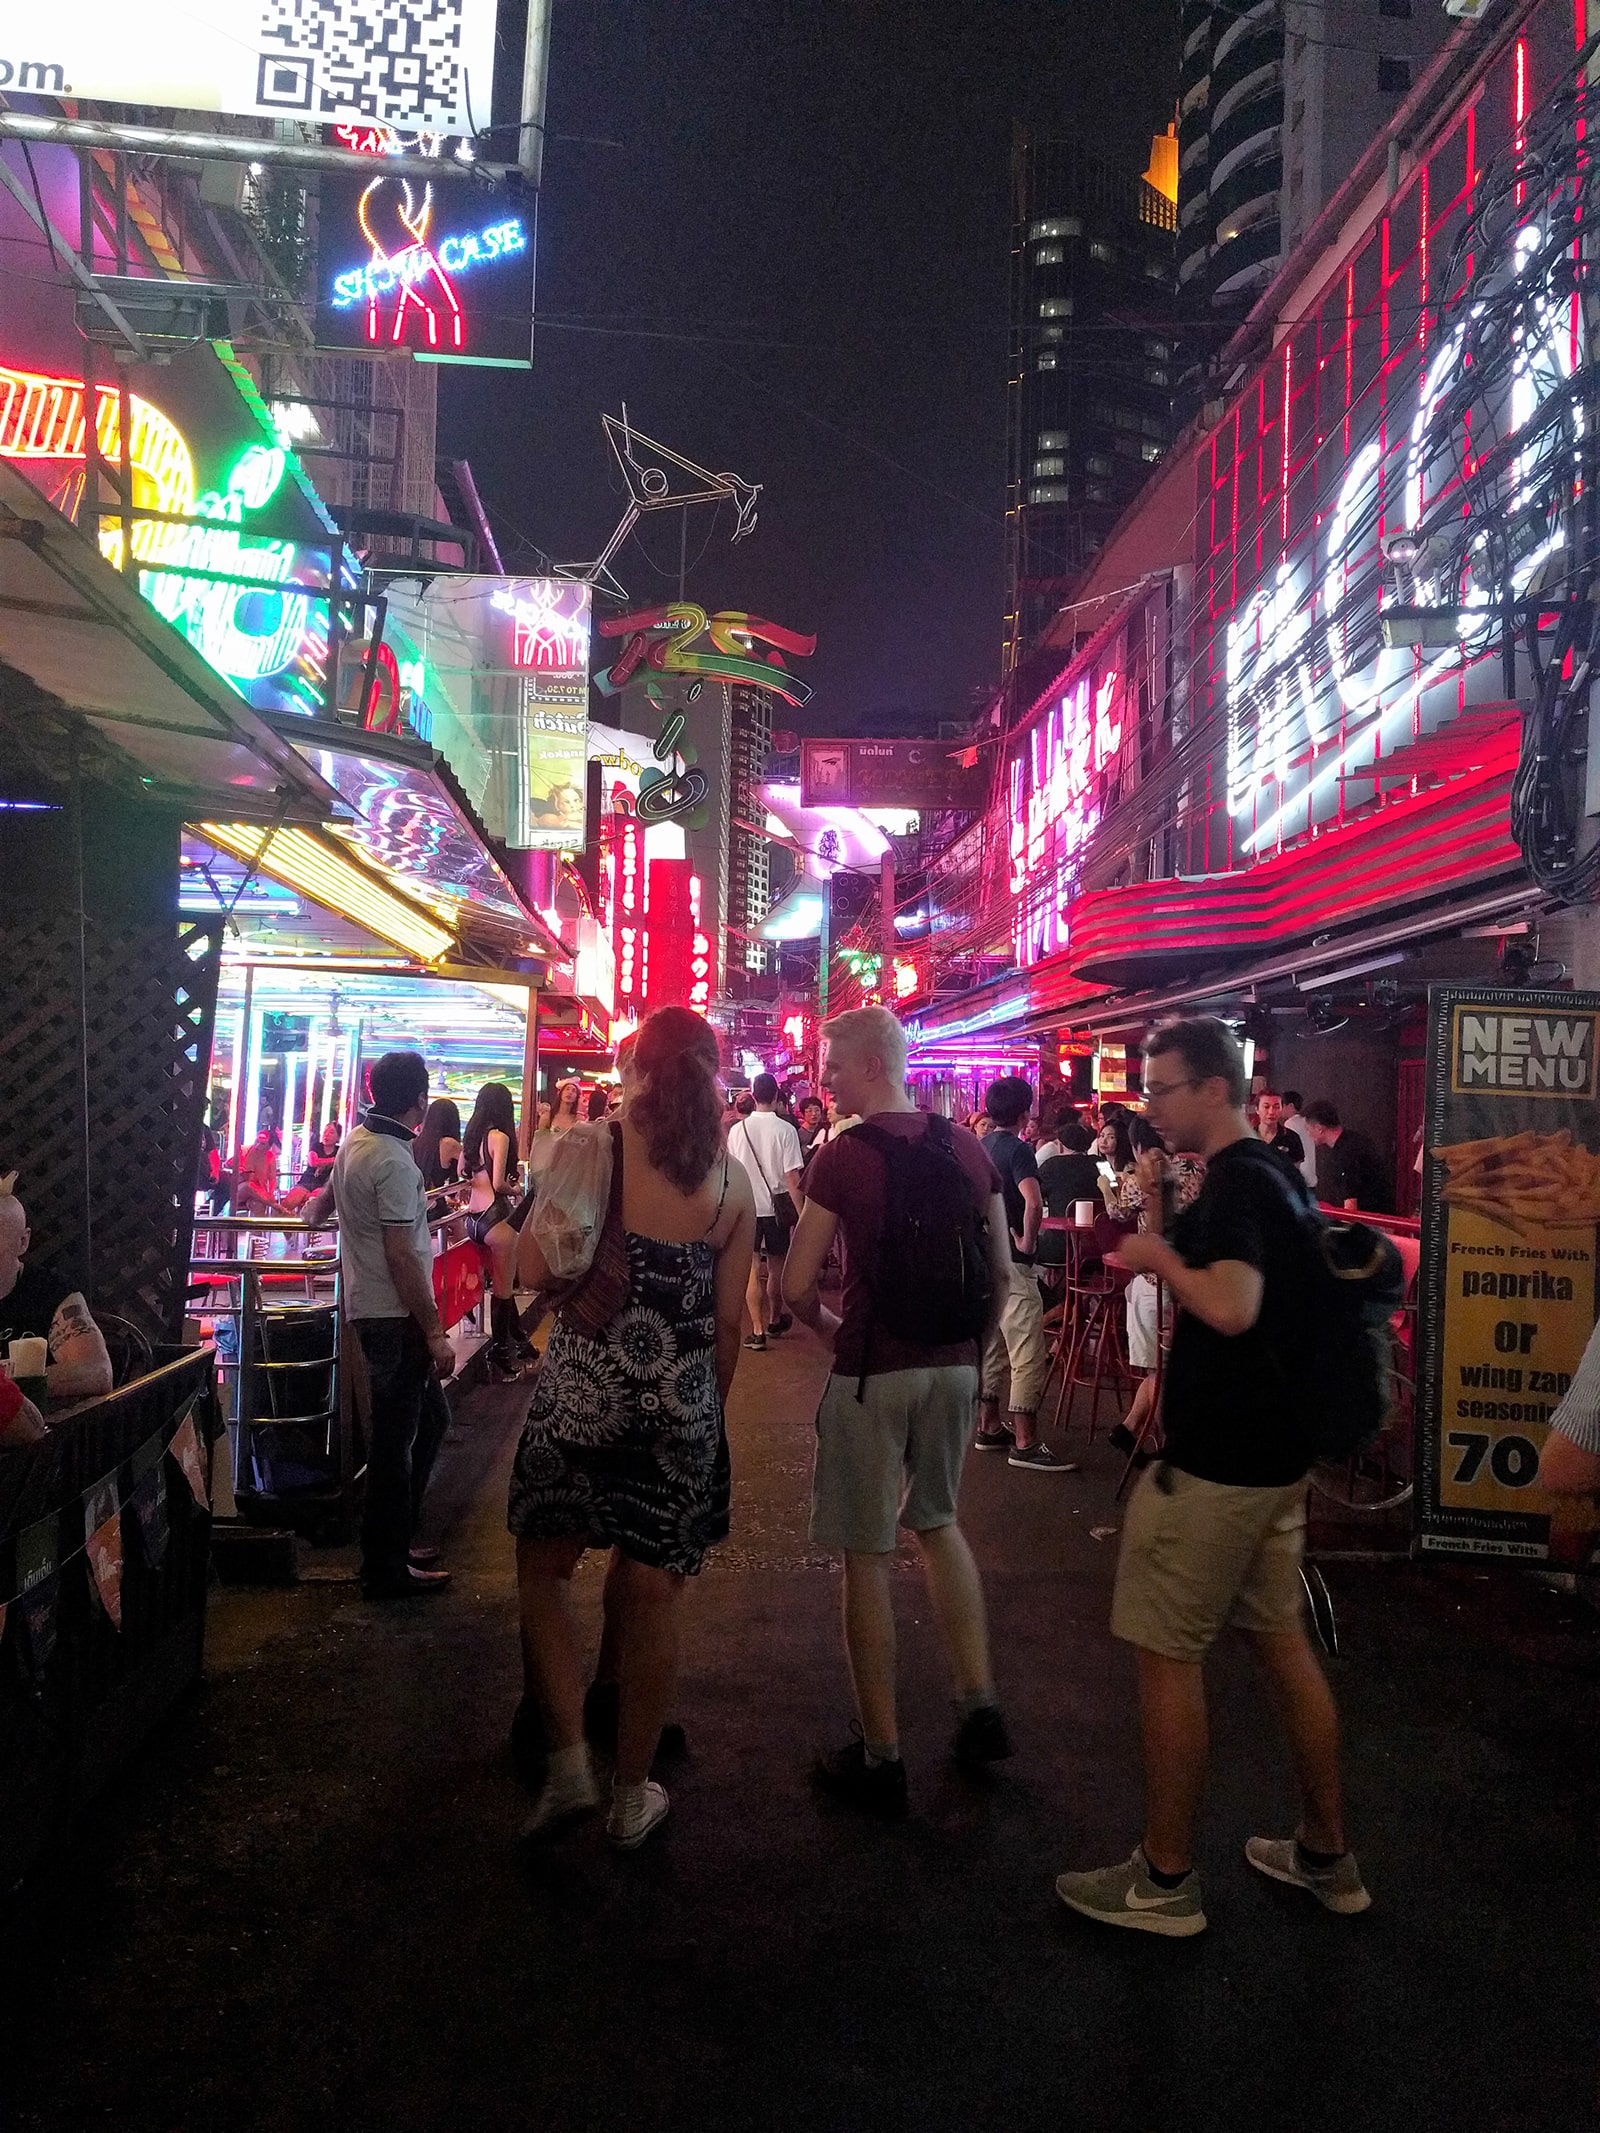 Les enseignes des bars dans une rue du quartier rouge de Bangkok